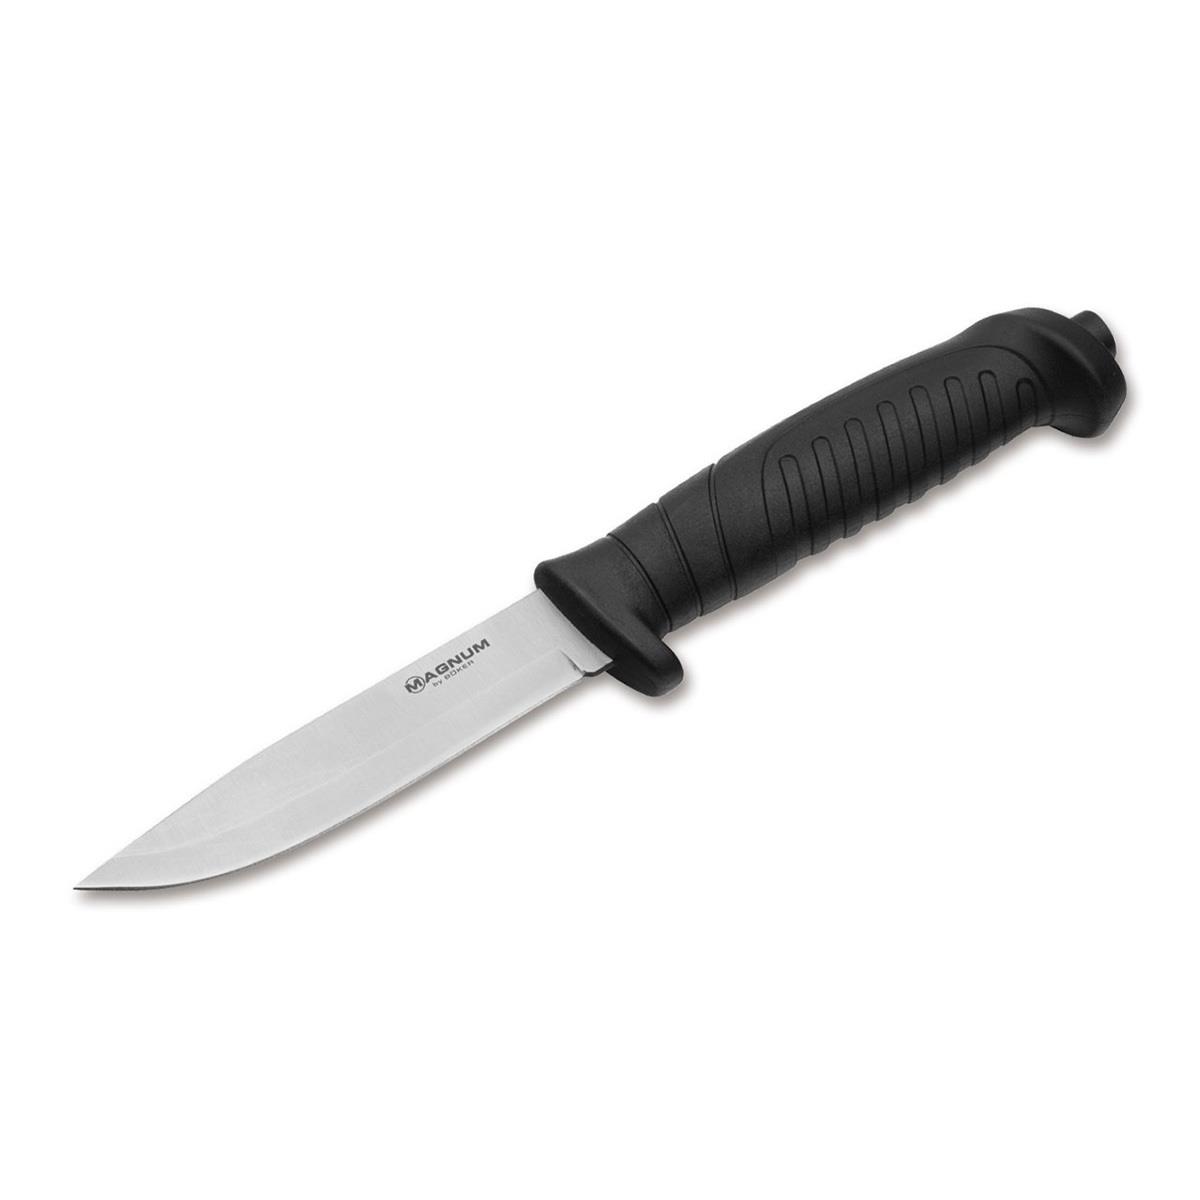 Нож рук-ть пластик черн., клинок 420А BK02MB010 Knivgar Black Boker 294370 - фото 1